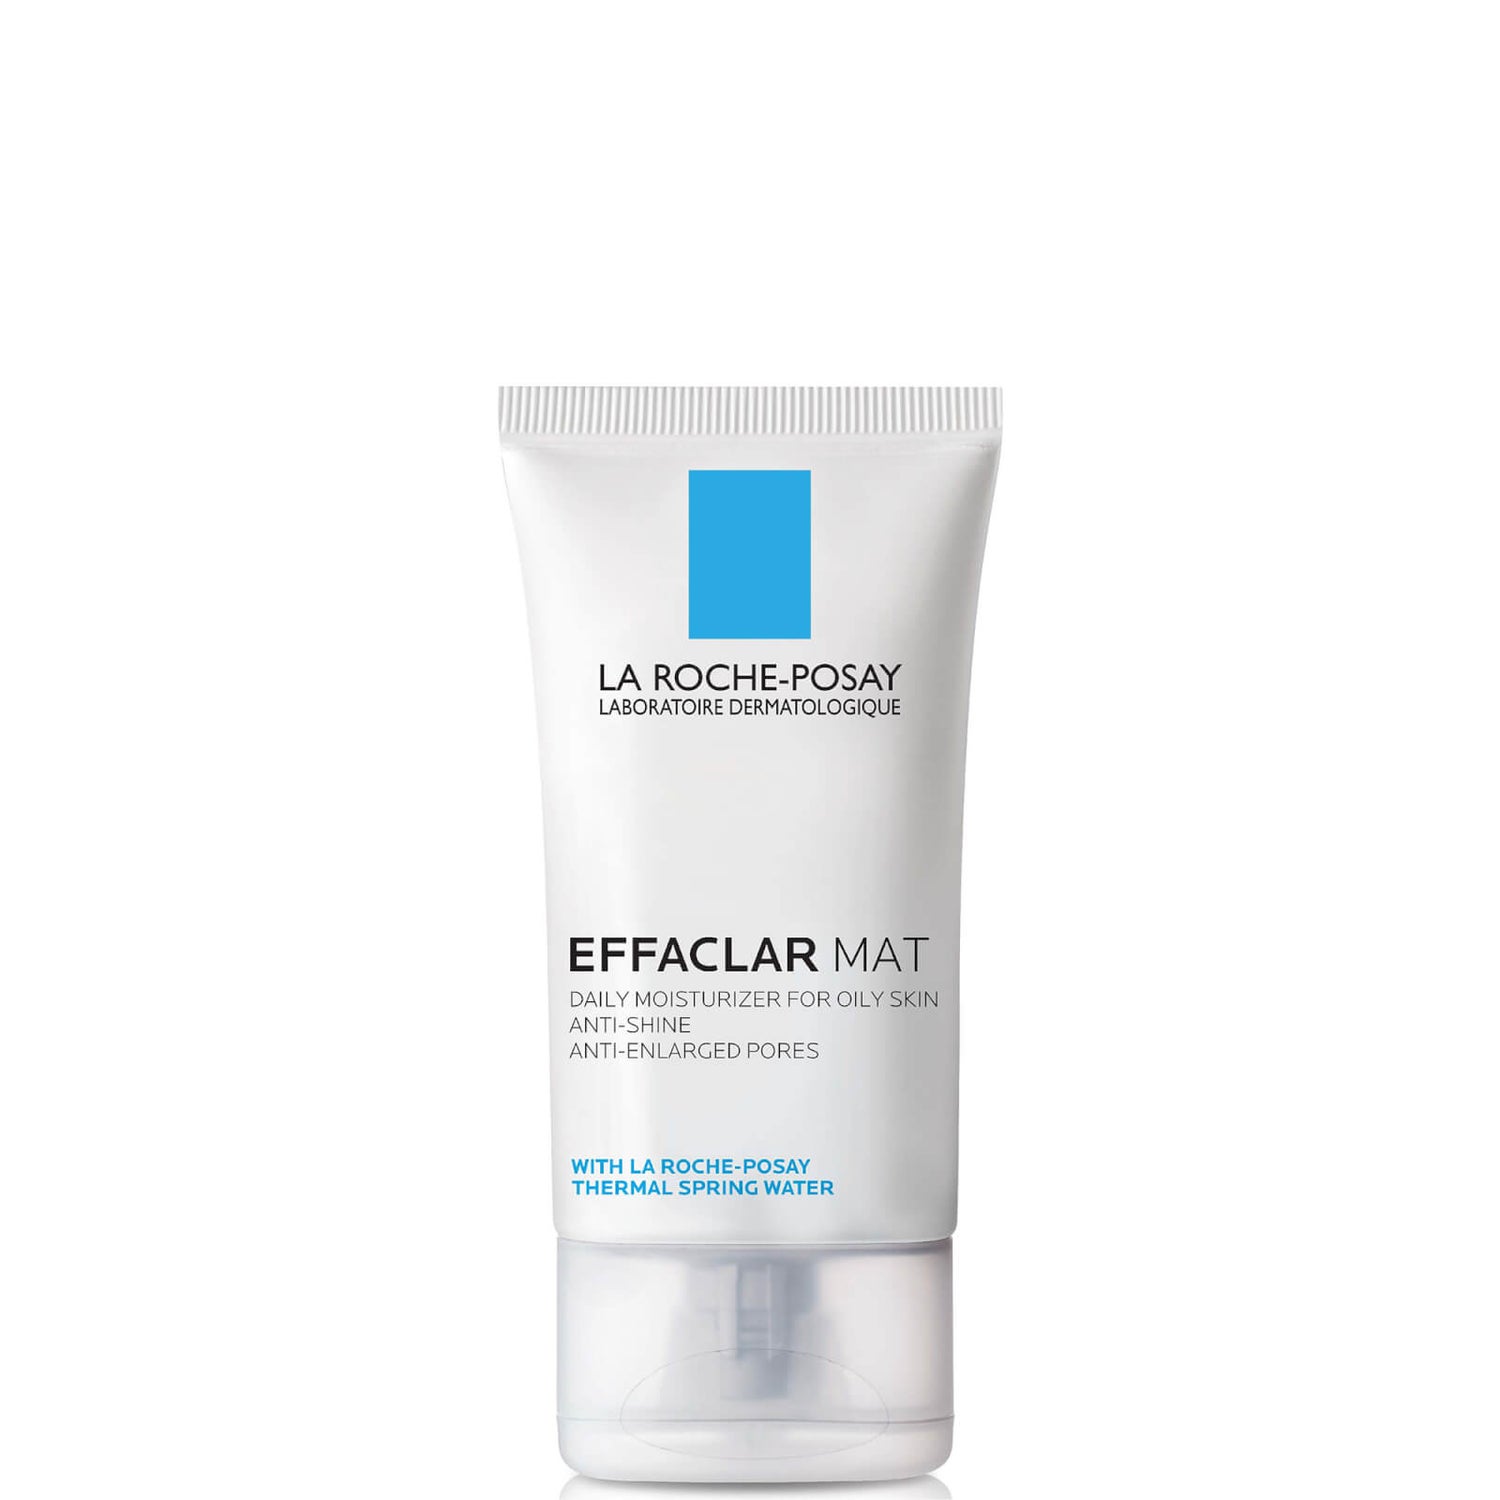 La Roche-Posay Effaclar Mat Oil-Free Facial Moisturizer for Oily Skin to Mattify Skin and Refine Pores, 1.35 Fl. Oz.